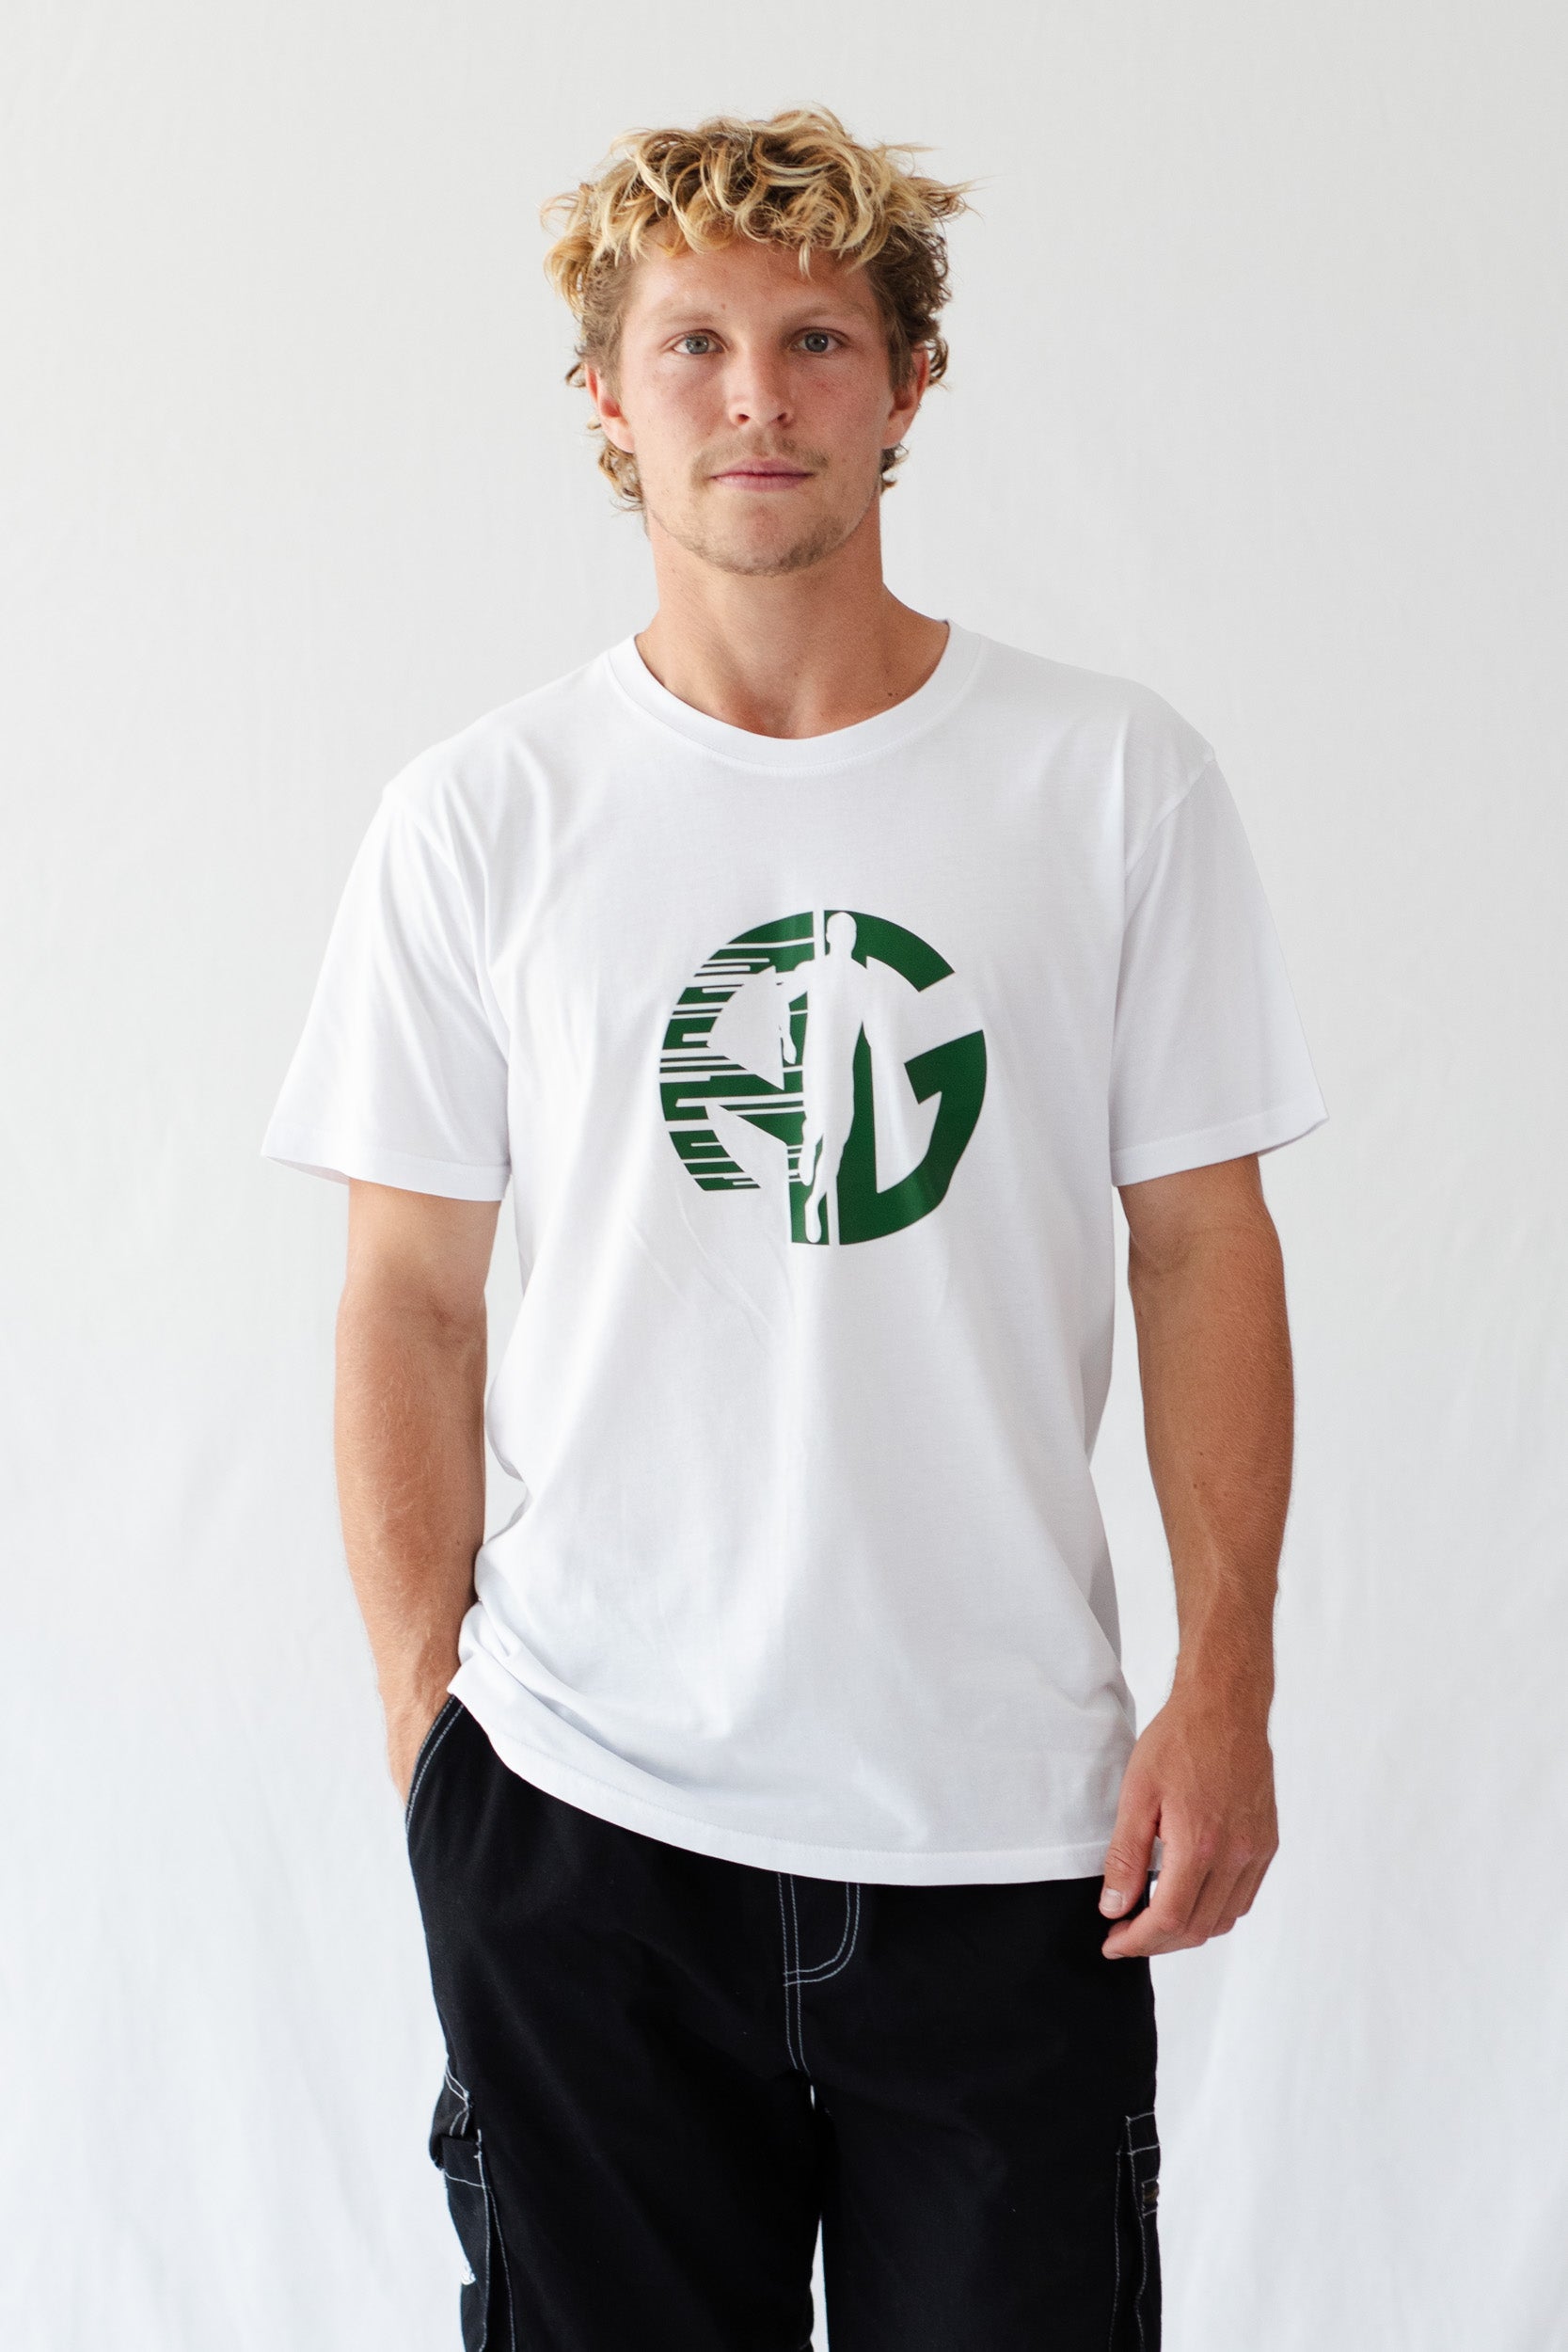 AG Running Man T-Shirt - White